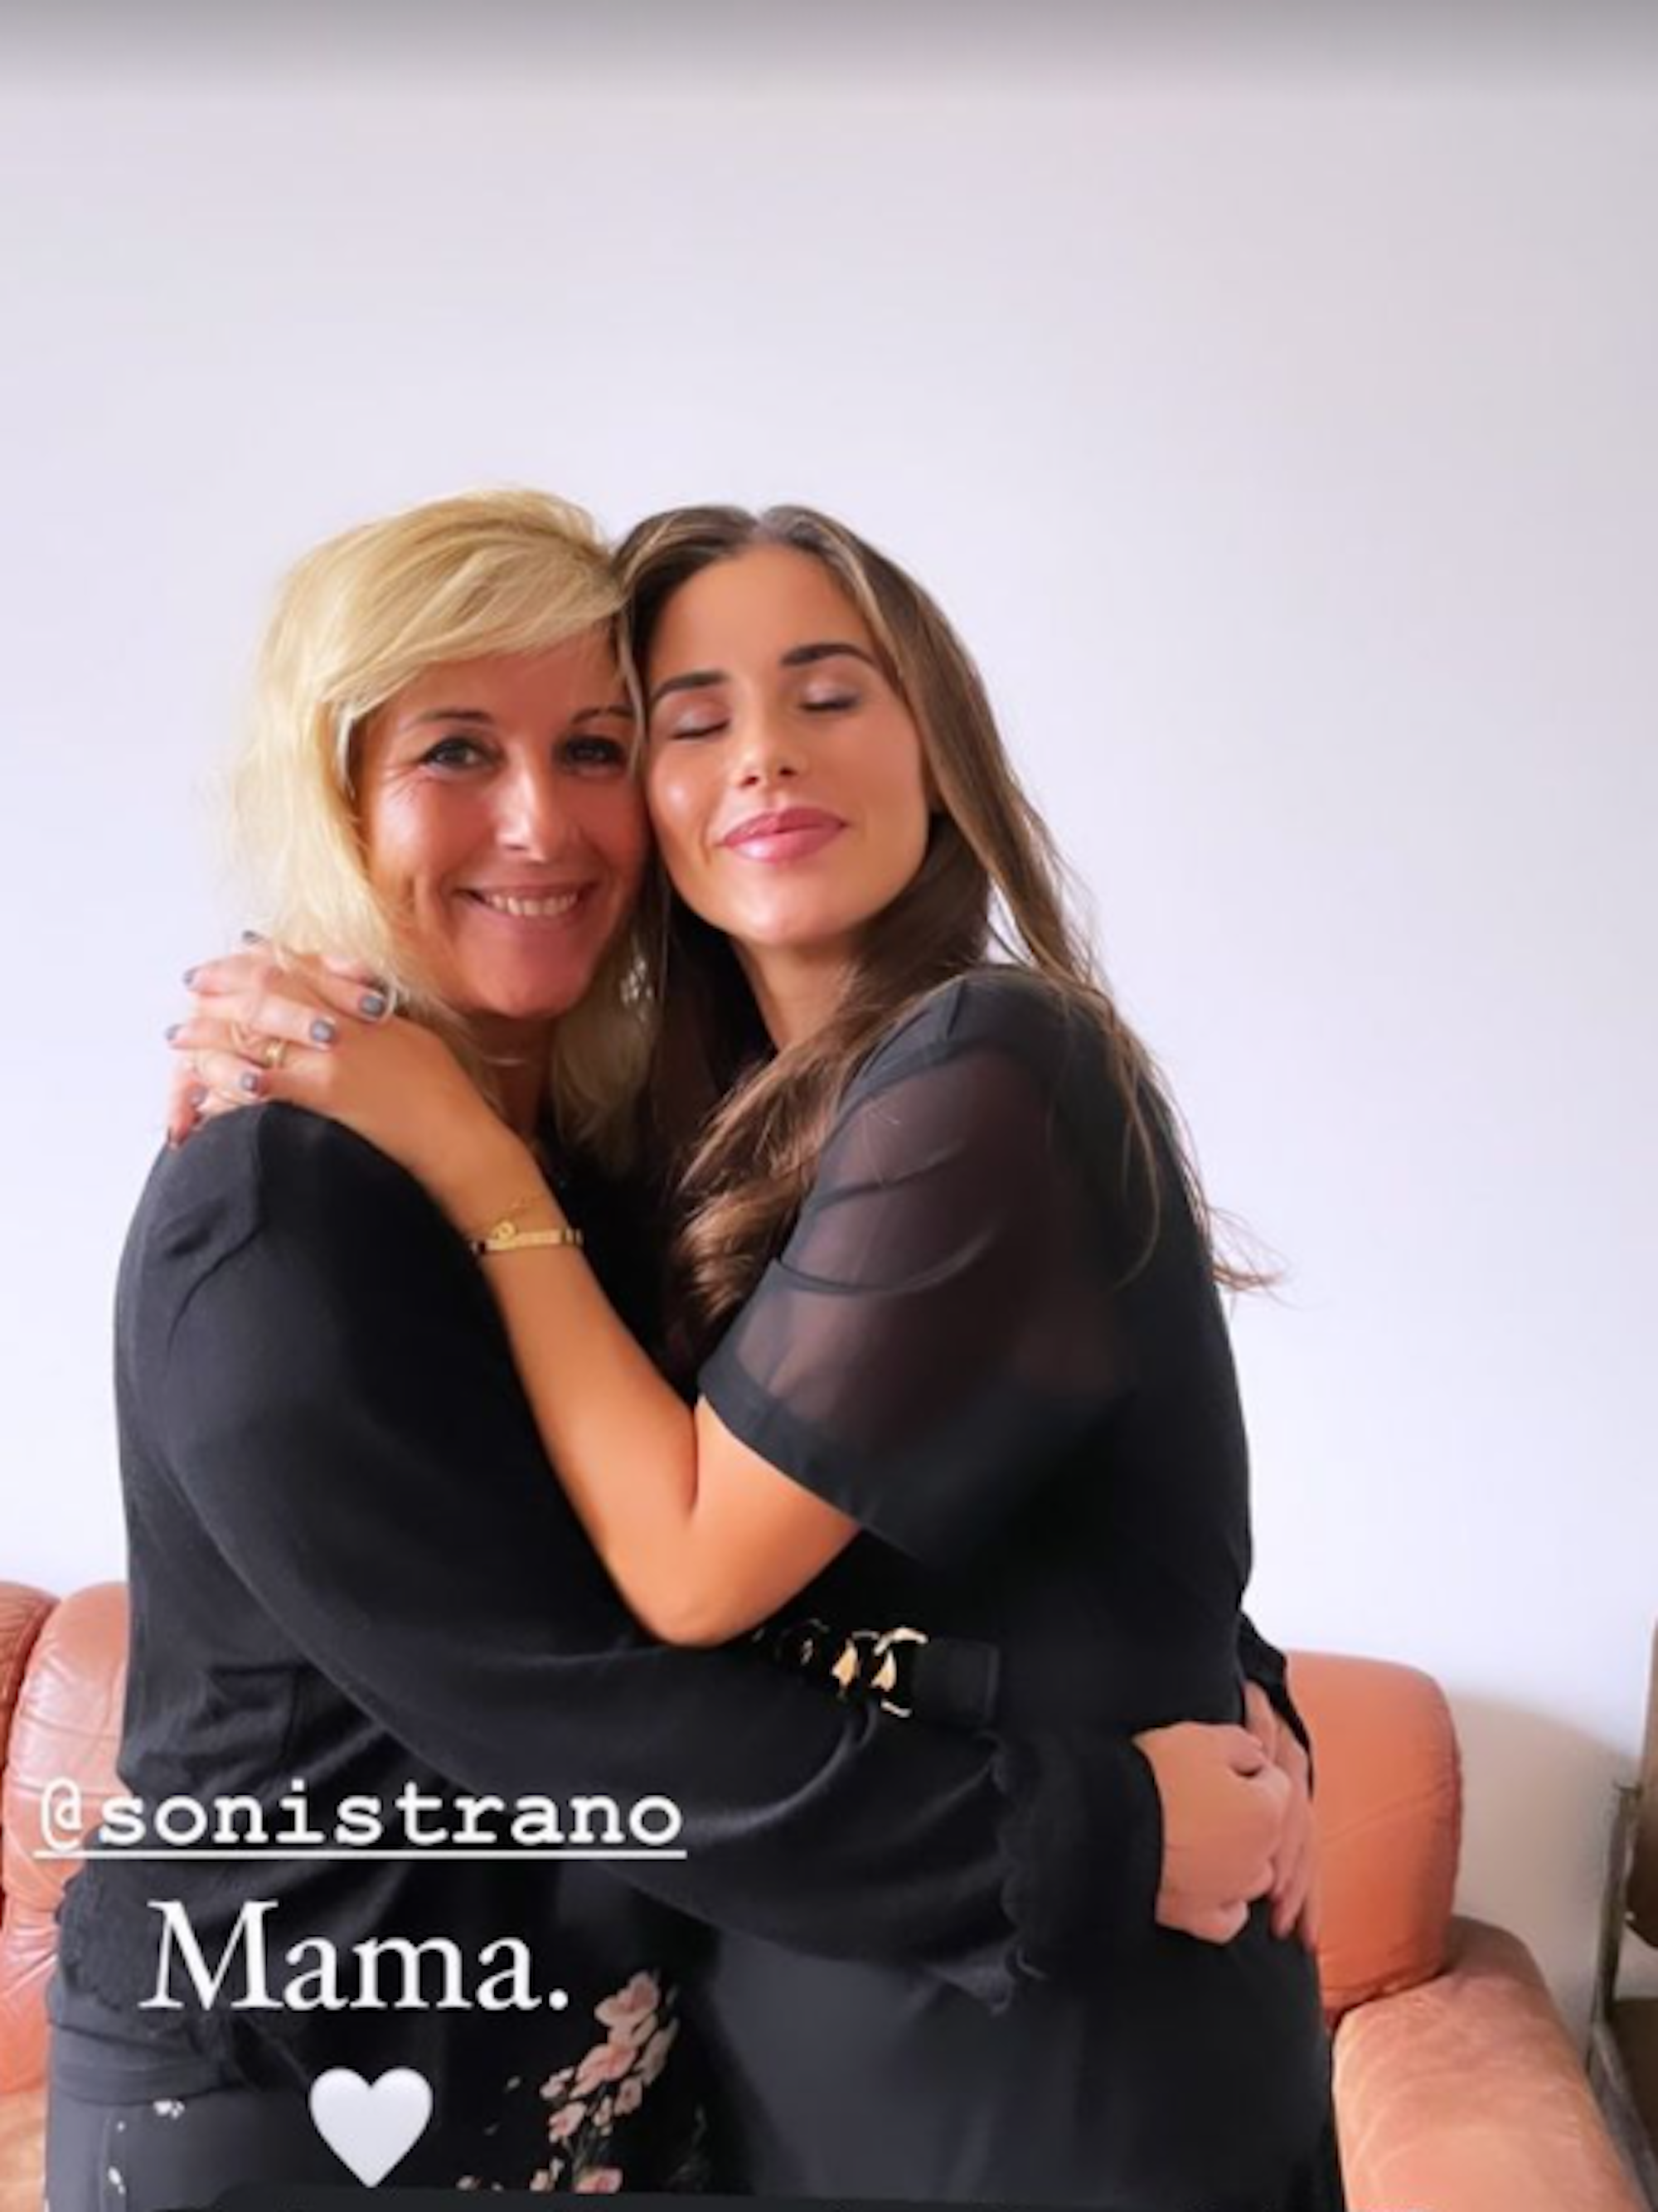 Sarah Engels (r.) gemeinsam mit ihrer Mutter (l.) auf einem Foto aus ihrer Instagram-Story vom 14. November 2021.